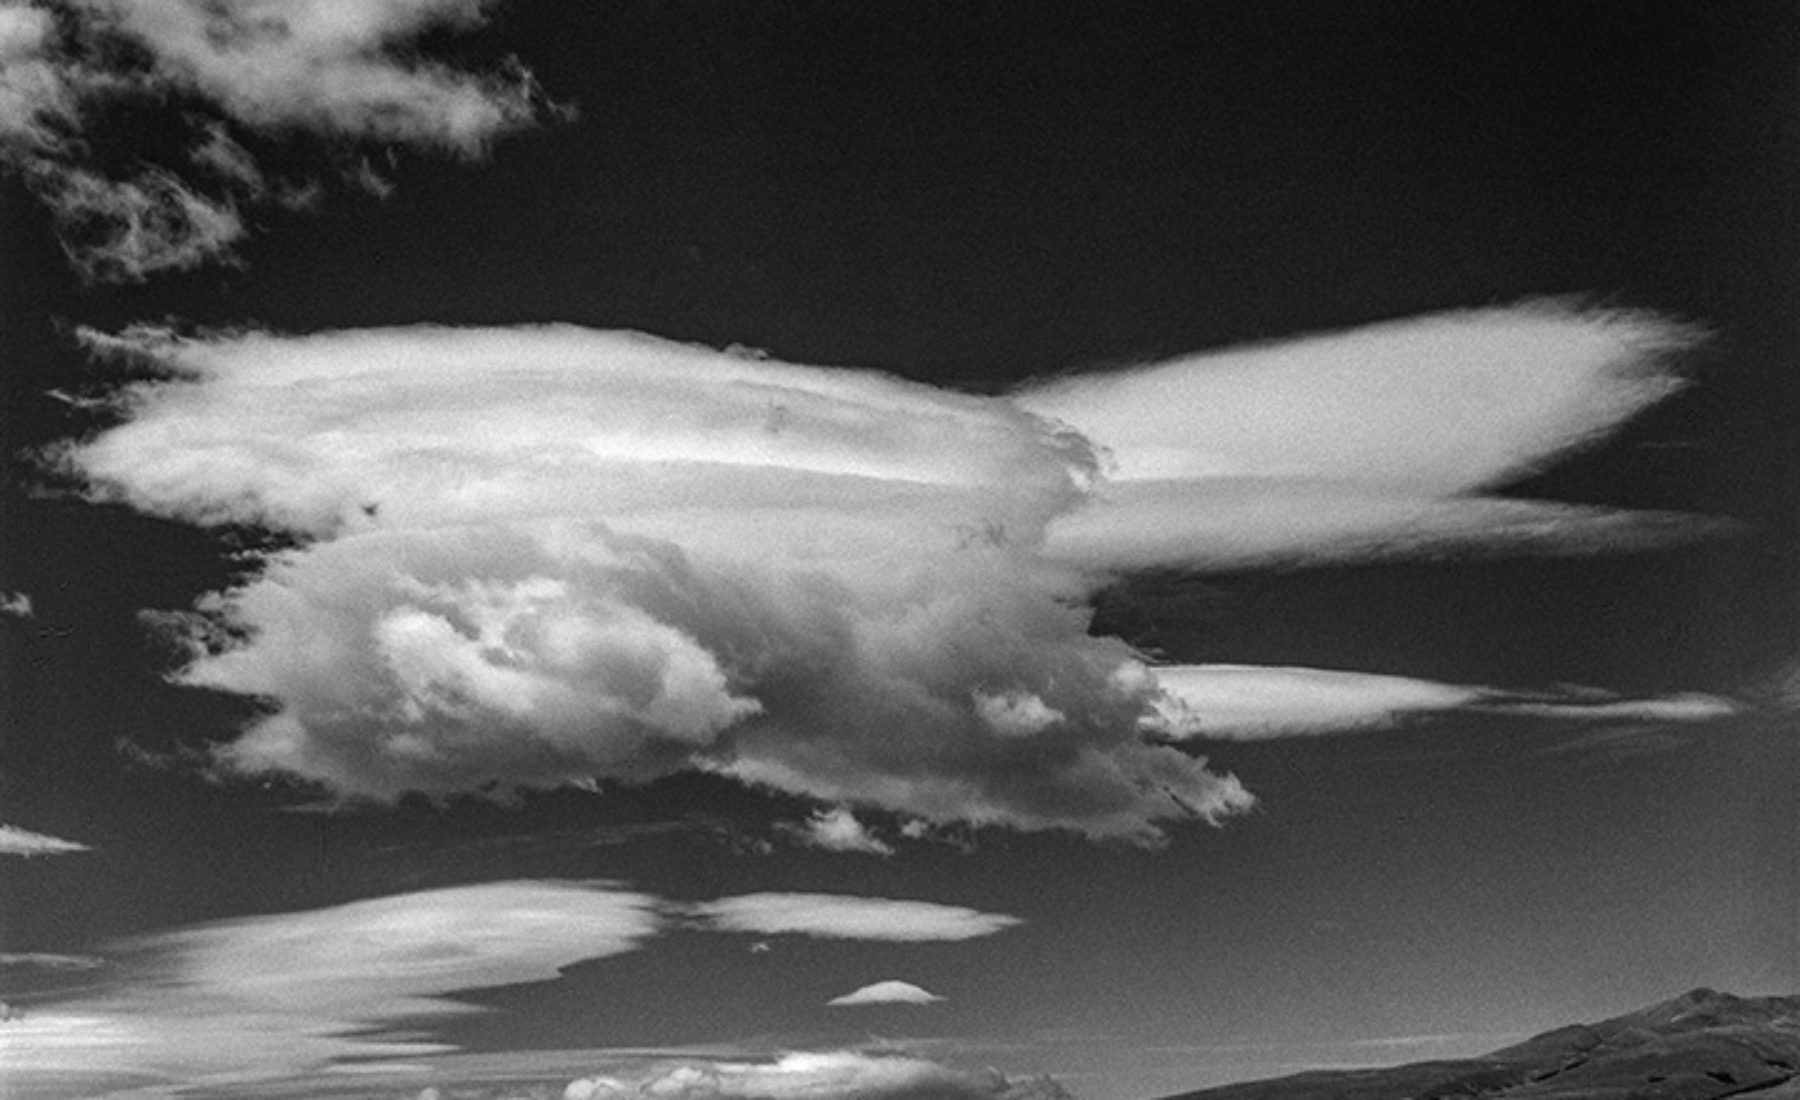 Patagonia Lenticular clouds